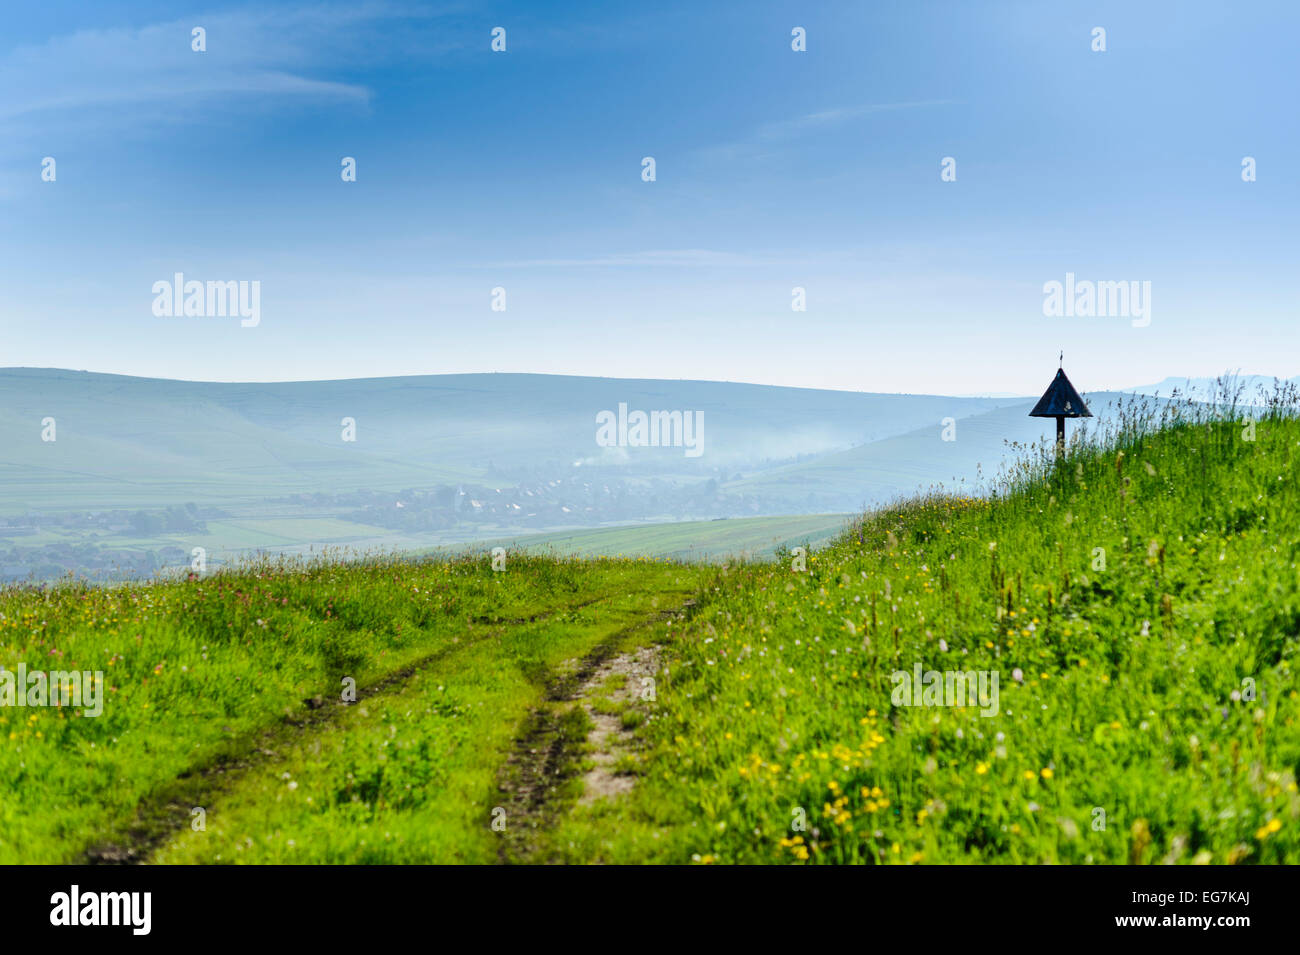 Verdi colline e prati con fiori selvatici in colline, montagne, campagna. La Romania, Transilvania, Harghita. Foto Stock